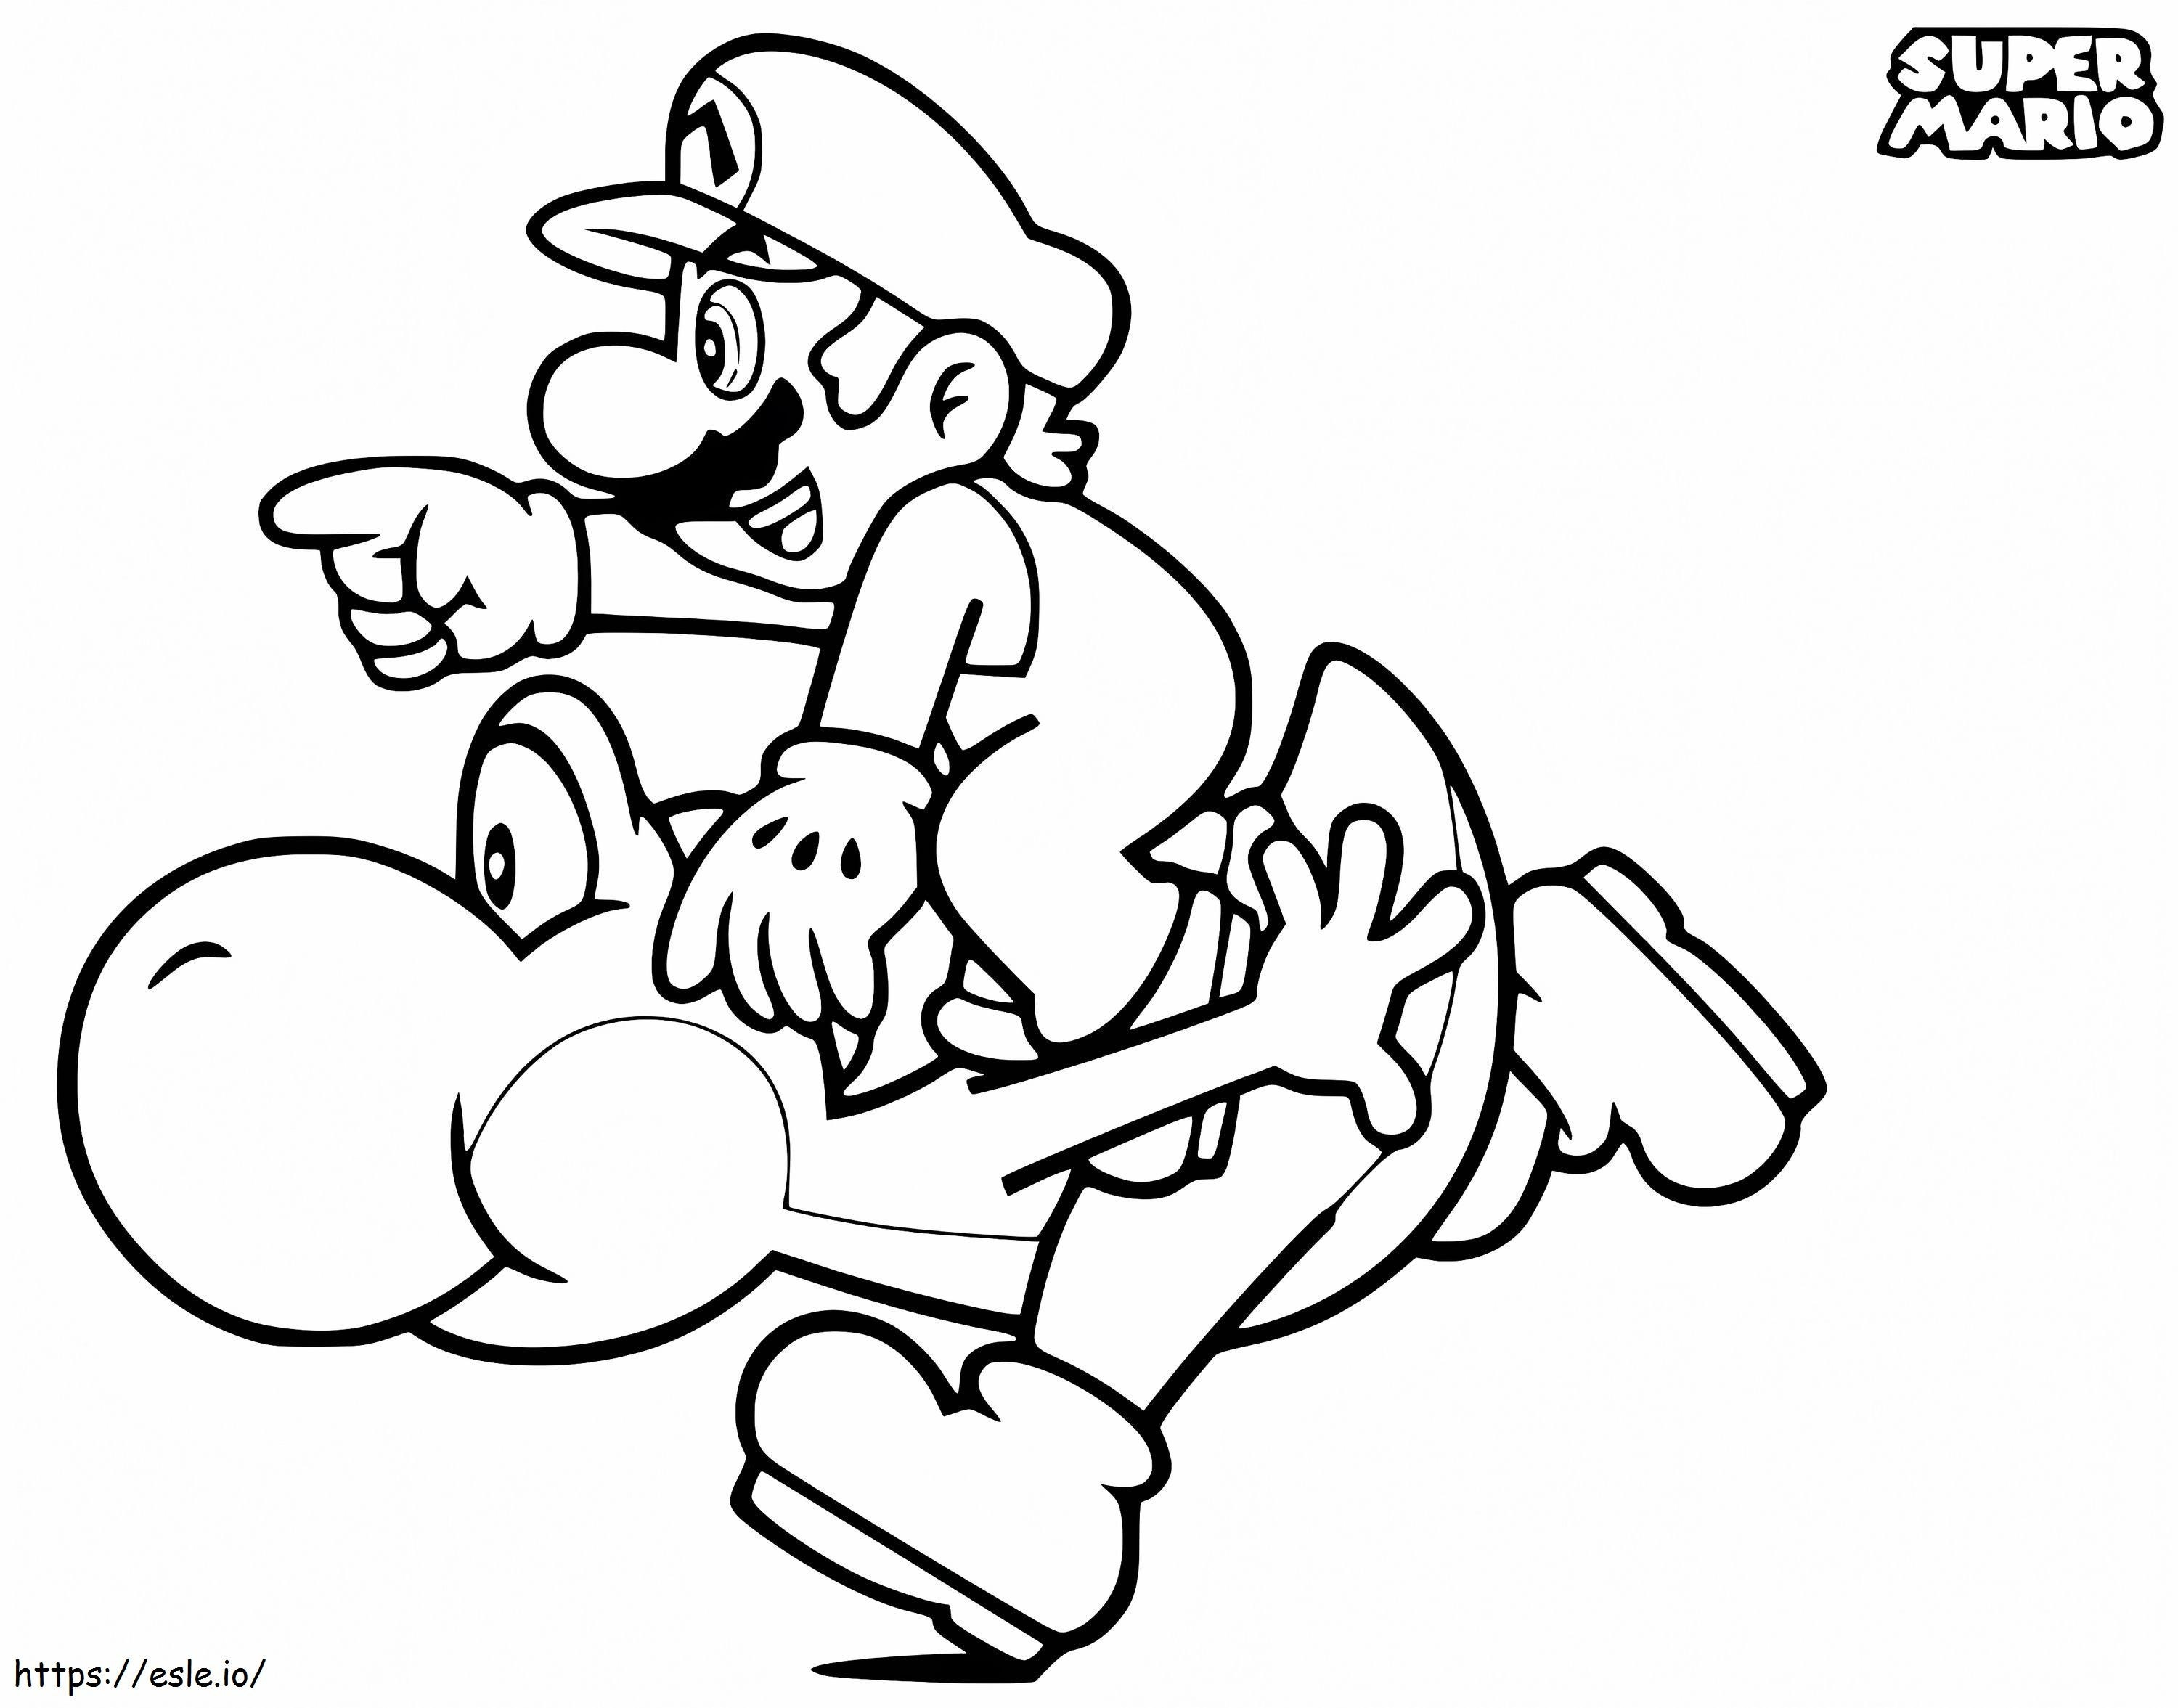 Mario Et Yoshi de colorat